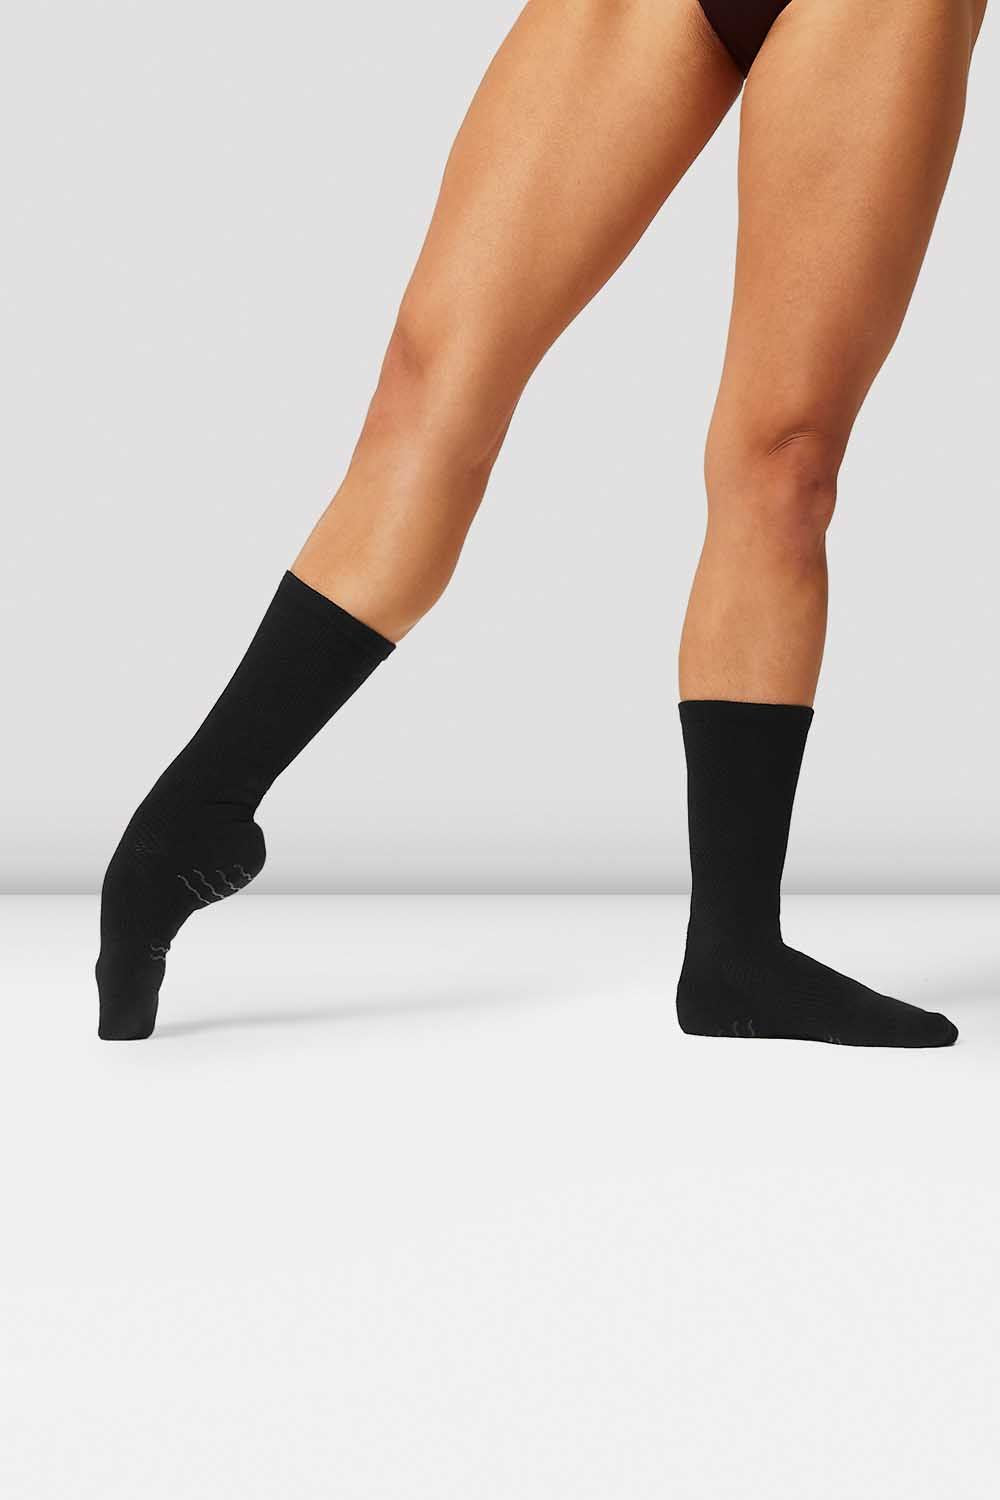 Bloch Hosiery & Socks for Women